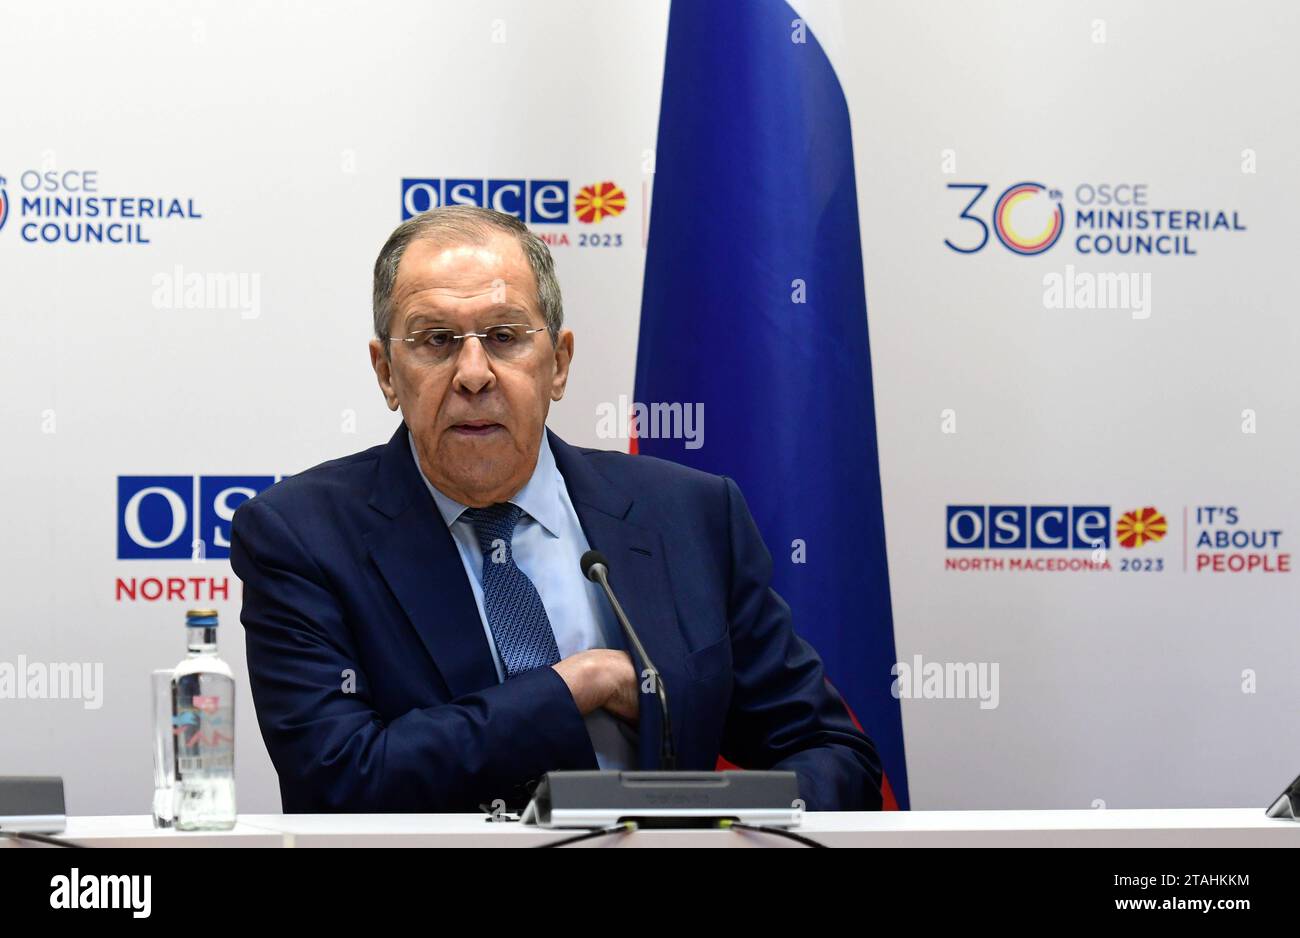 Sergey Lavrov ministro degli affari esteri della Federazione russa in conferenza stampa durante il consiglio ministeriale dell'OSCE 30 a Skopje, Macedonia del Nord, il 1° dicembre 2023. Credito: Imago/Alamy Live News Foto Stock